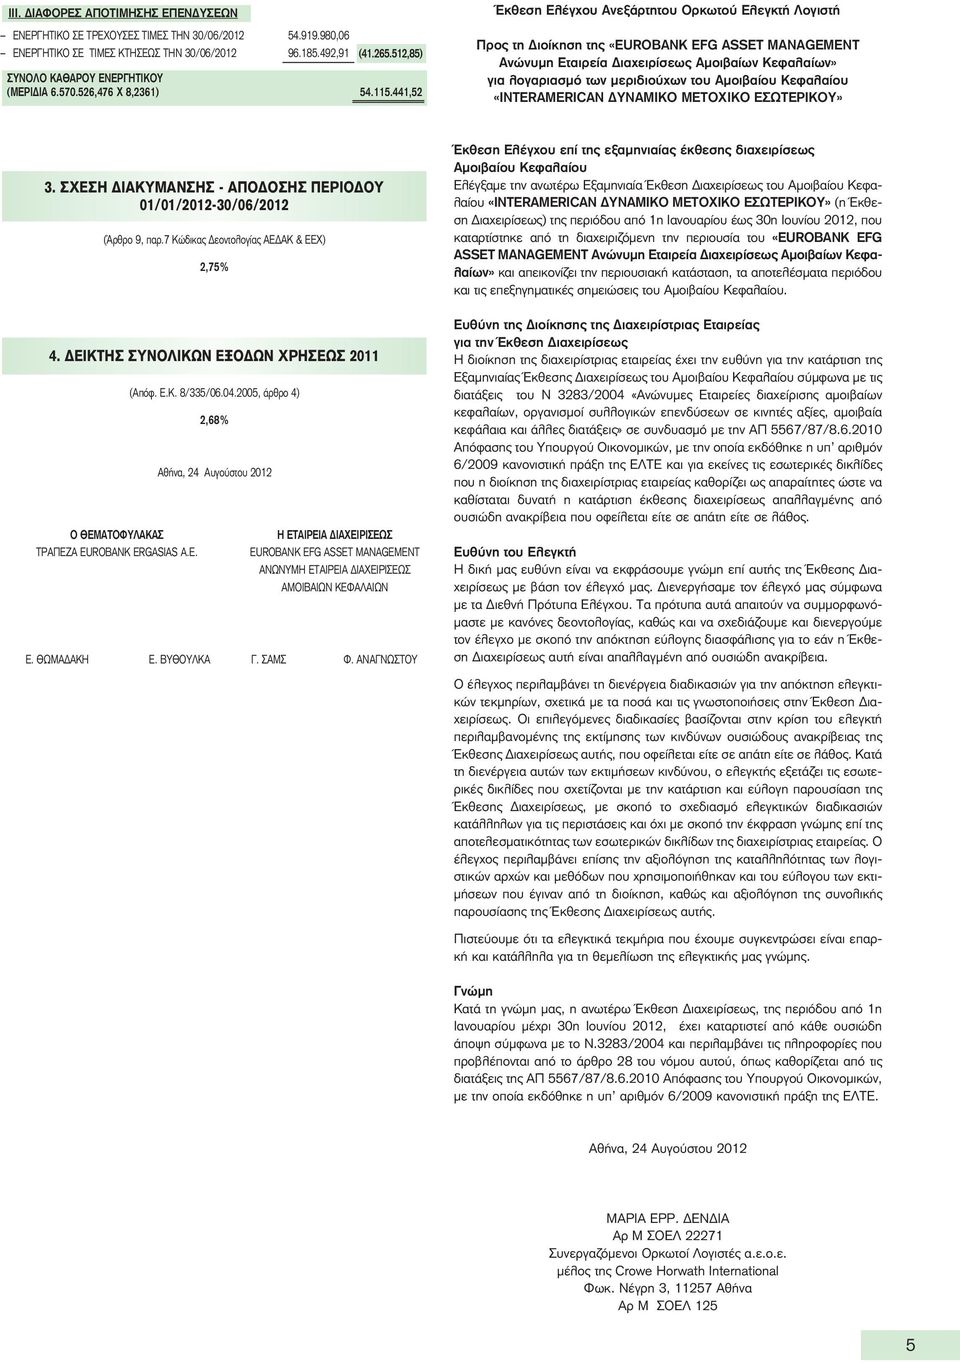 441,52 Έκθεση Ελέγχου Ανεξάρτητου Ορκωτού Ελεγκτή Λογιστή Προς τη Διοίκηση της «EUROBANK EFG ASSET MANAGEMENT Ανώνυμη Εταιρεία Διαχειρίσεως Αμοιβαίων Κεφαλαίων» για λογαριασμό των μεριδιούχων του